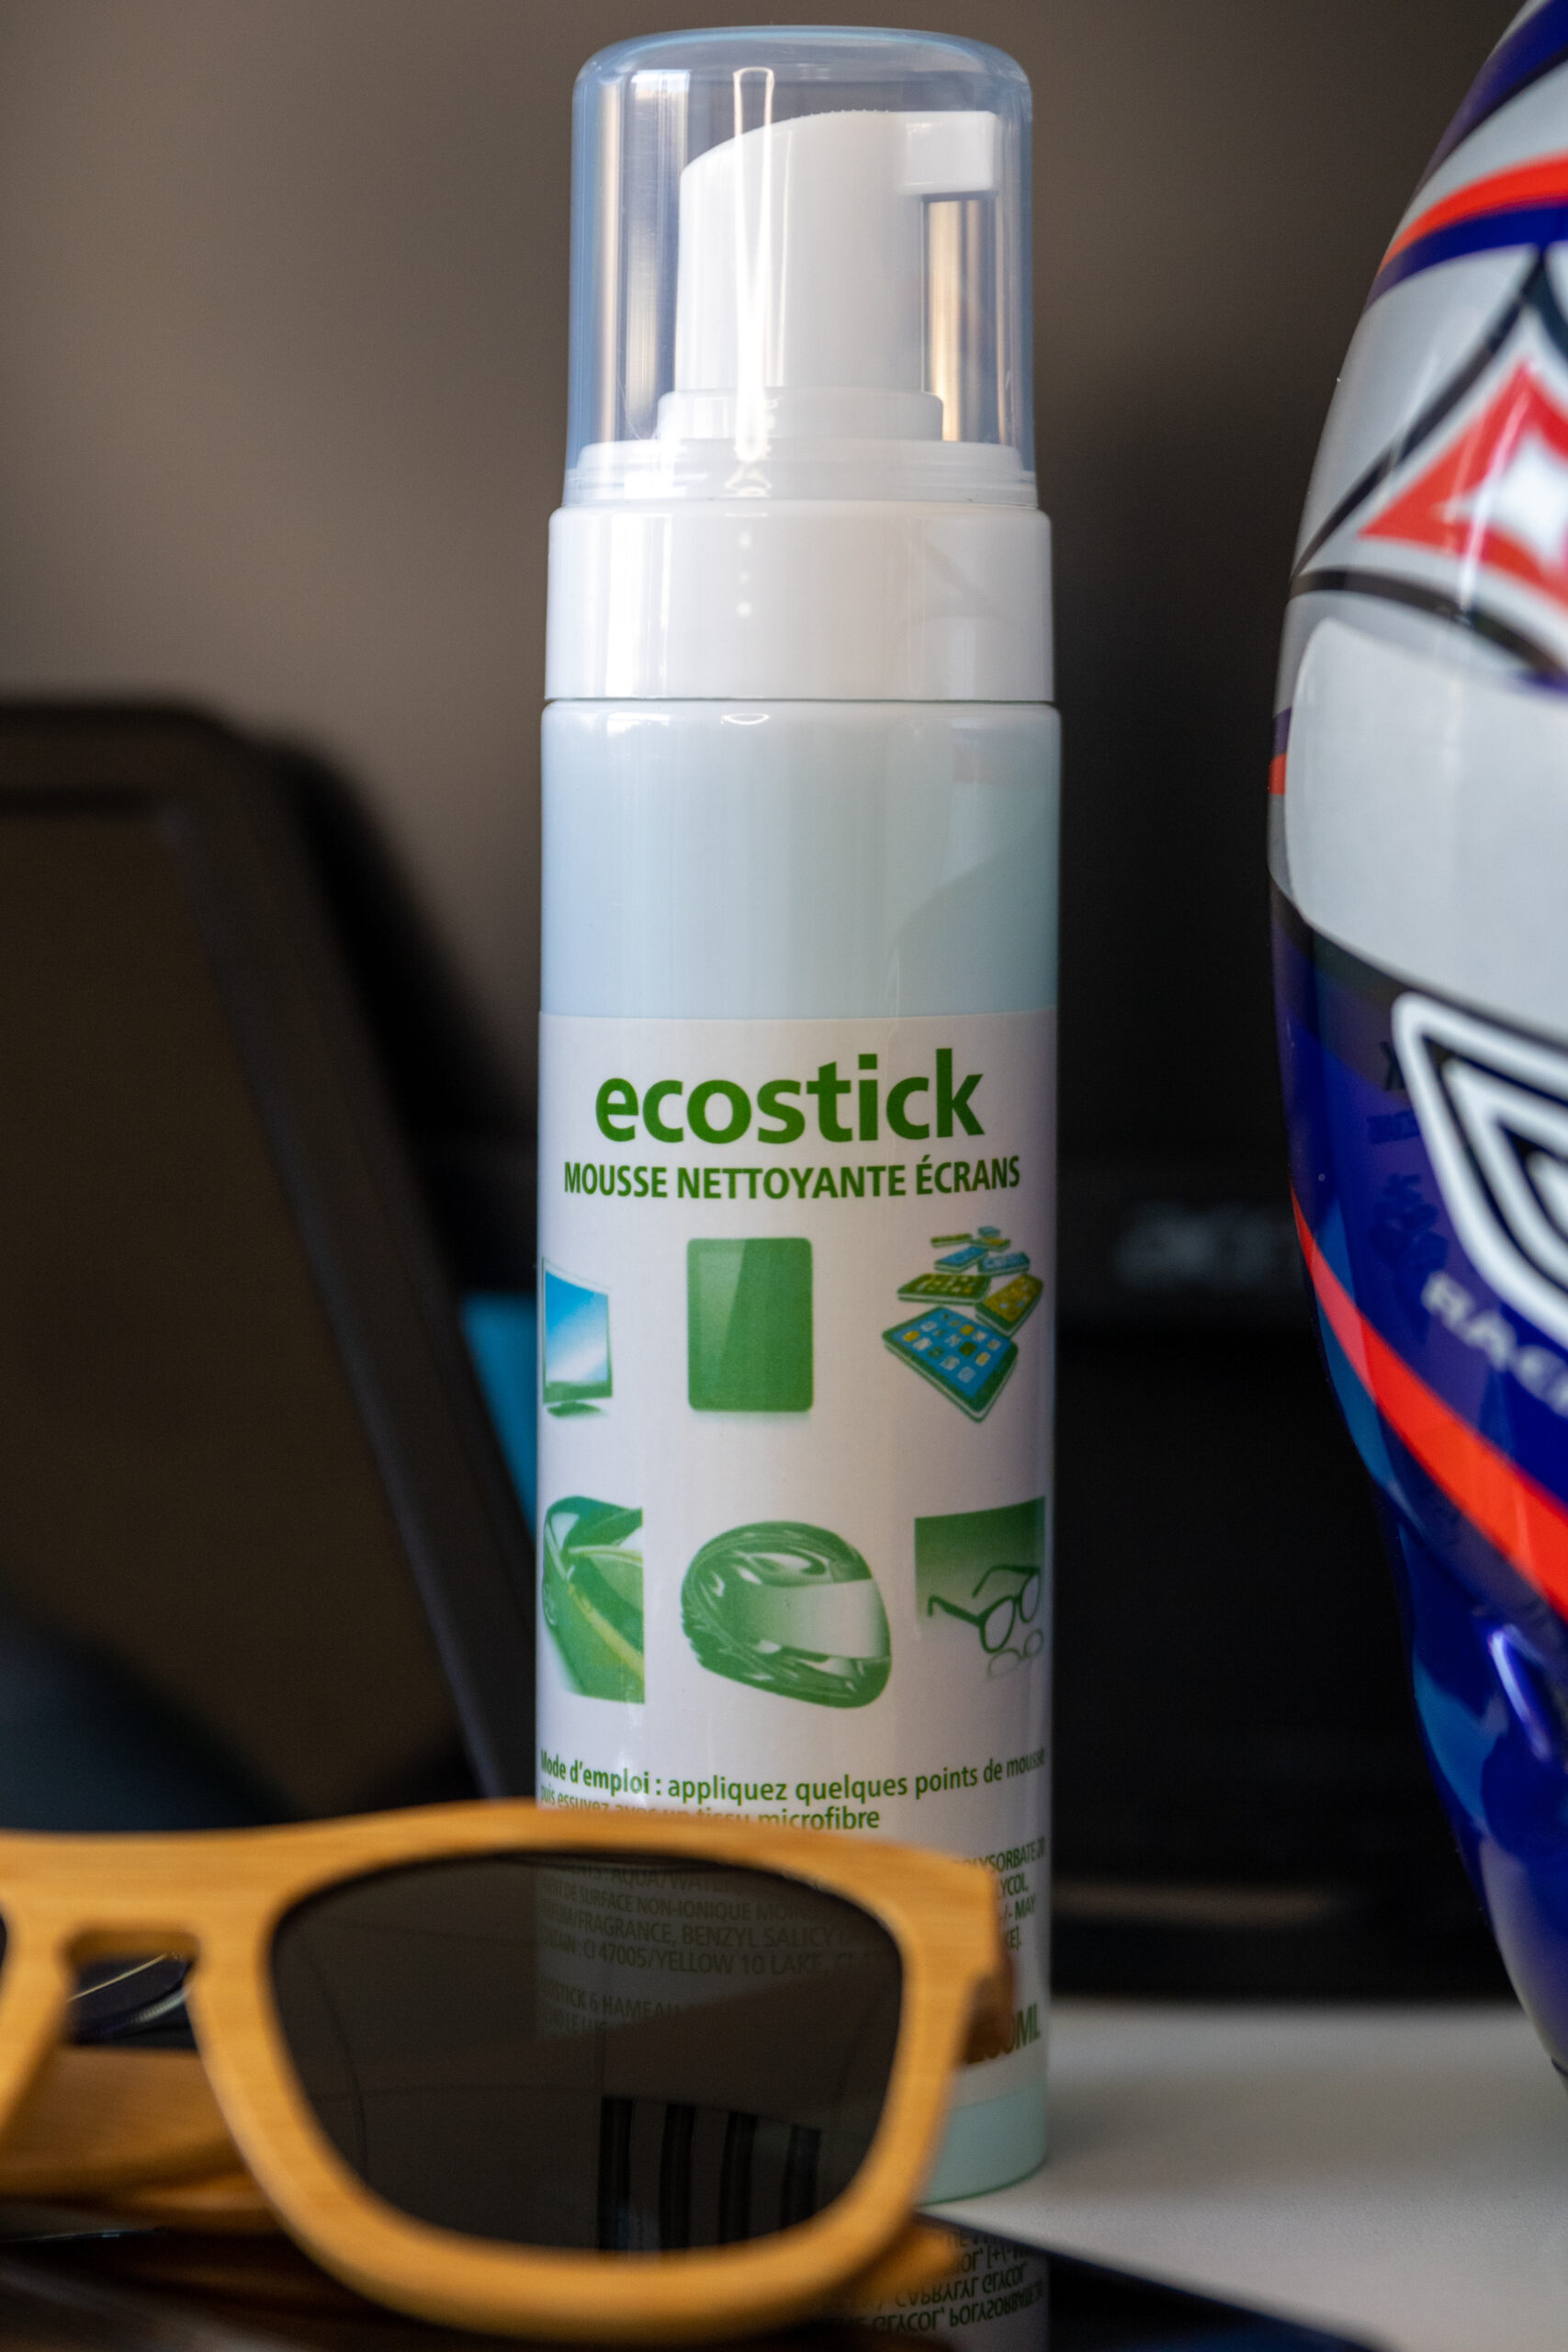 GEL MOUSSE 200ml - Ecostick produit nettoyant lunette